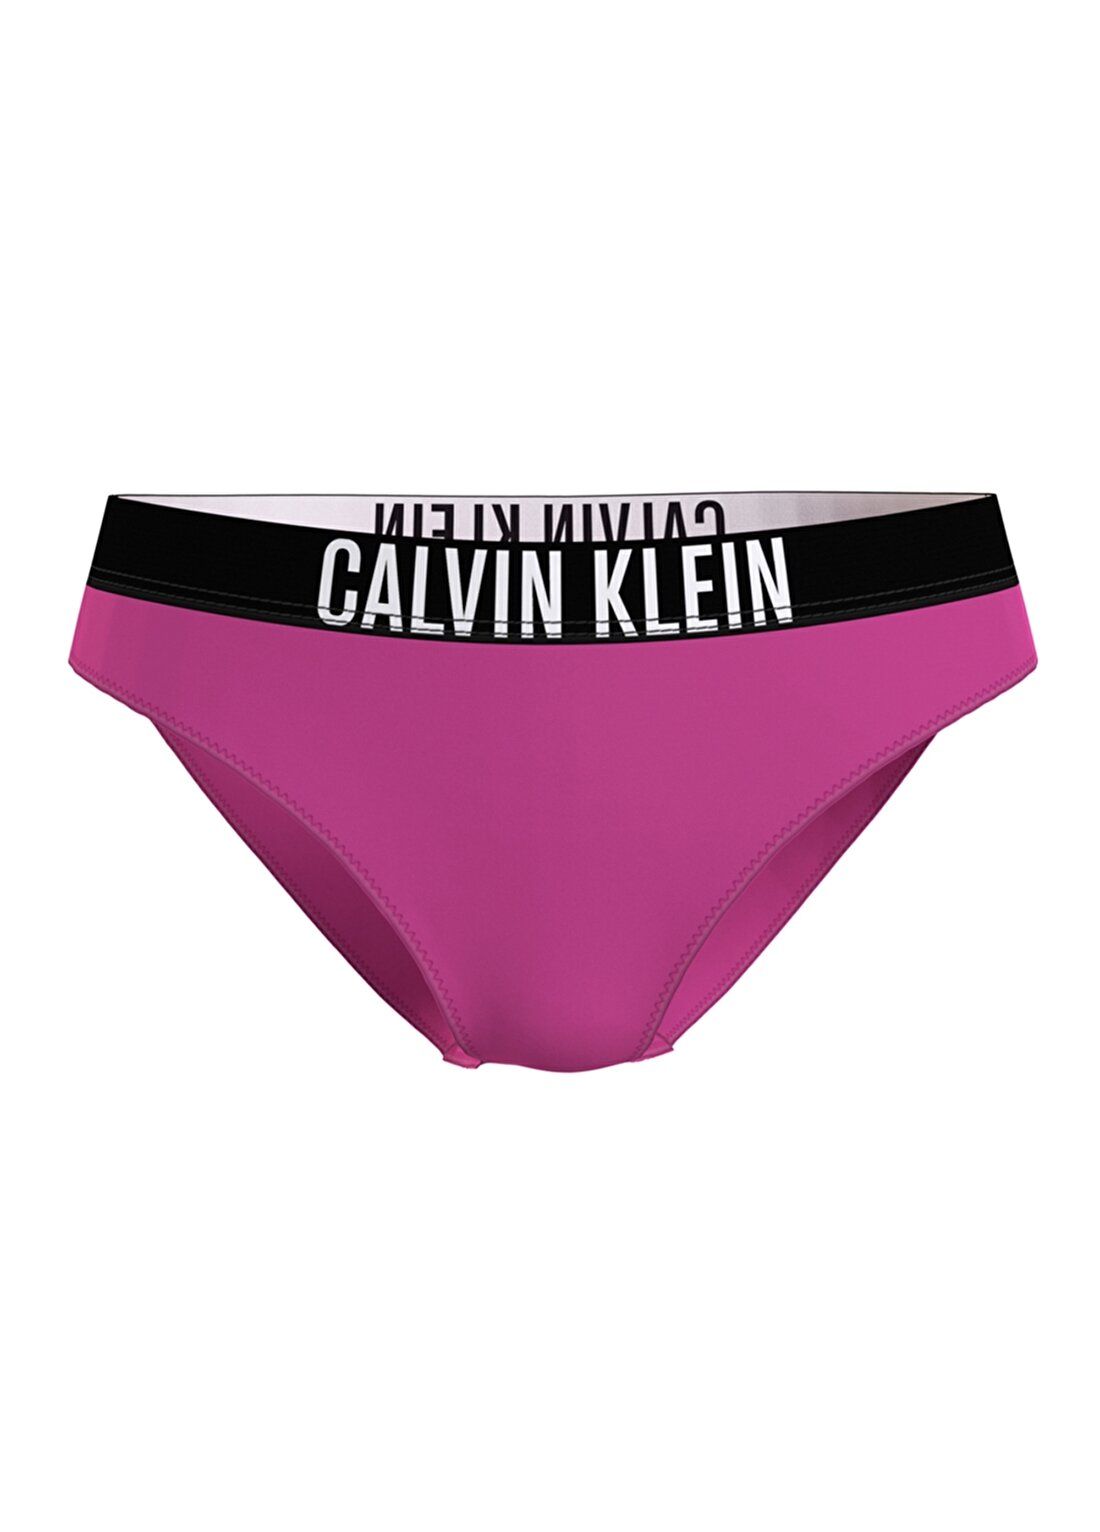 Calvin Klein Baskılı Mor Kadın Bikini Alt